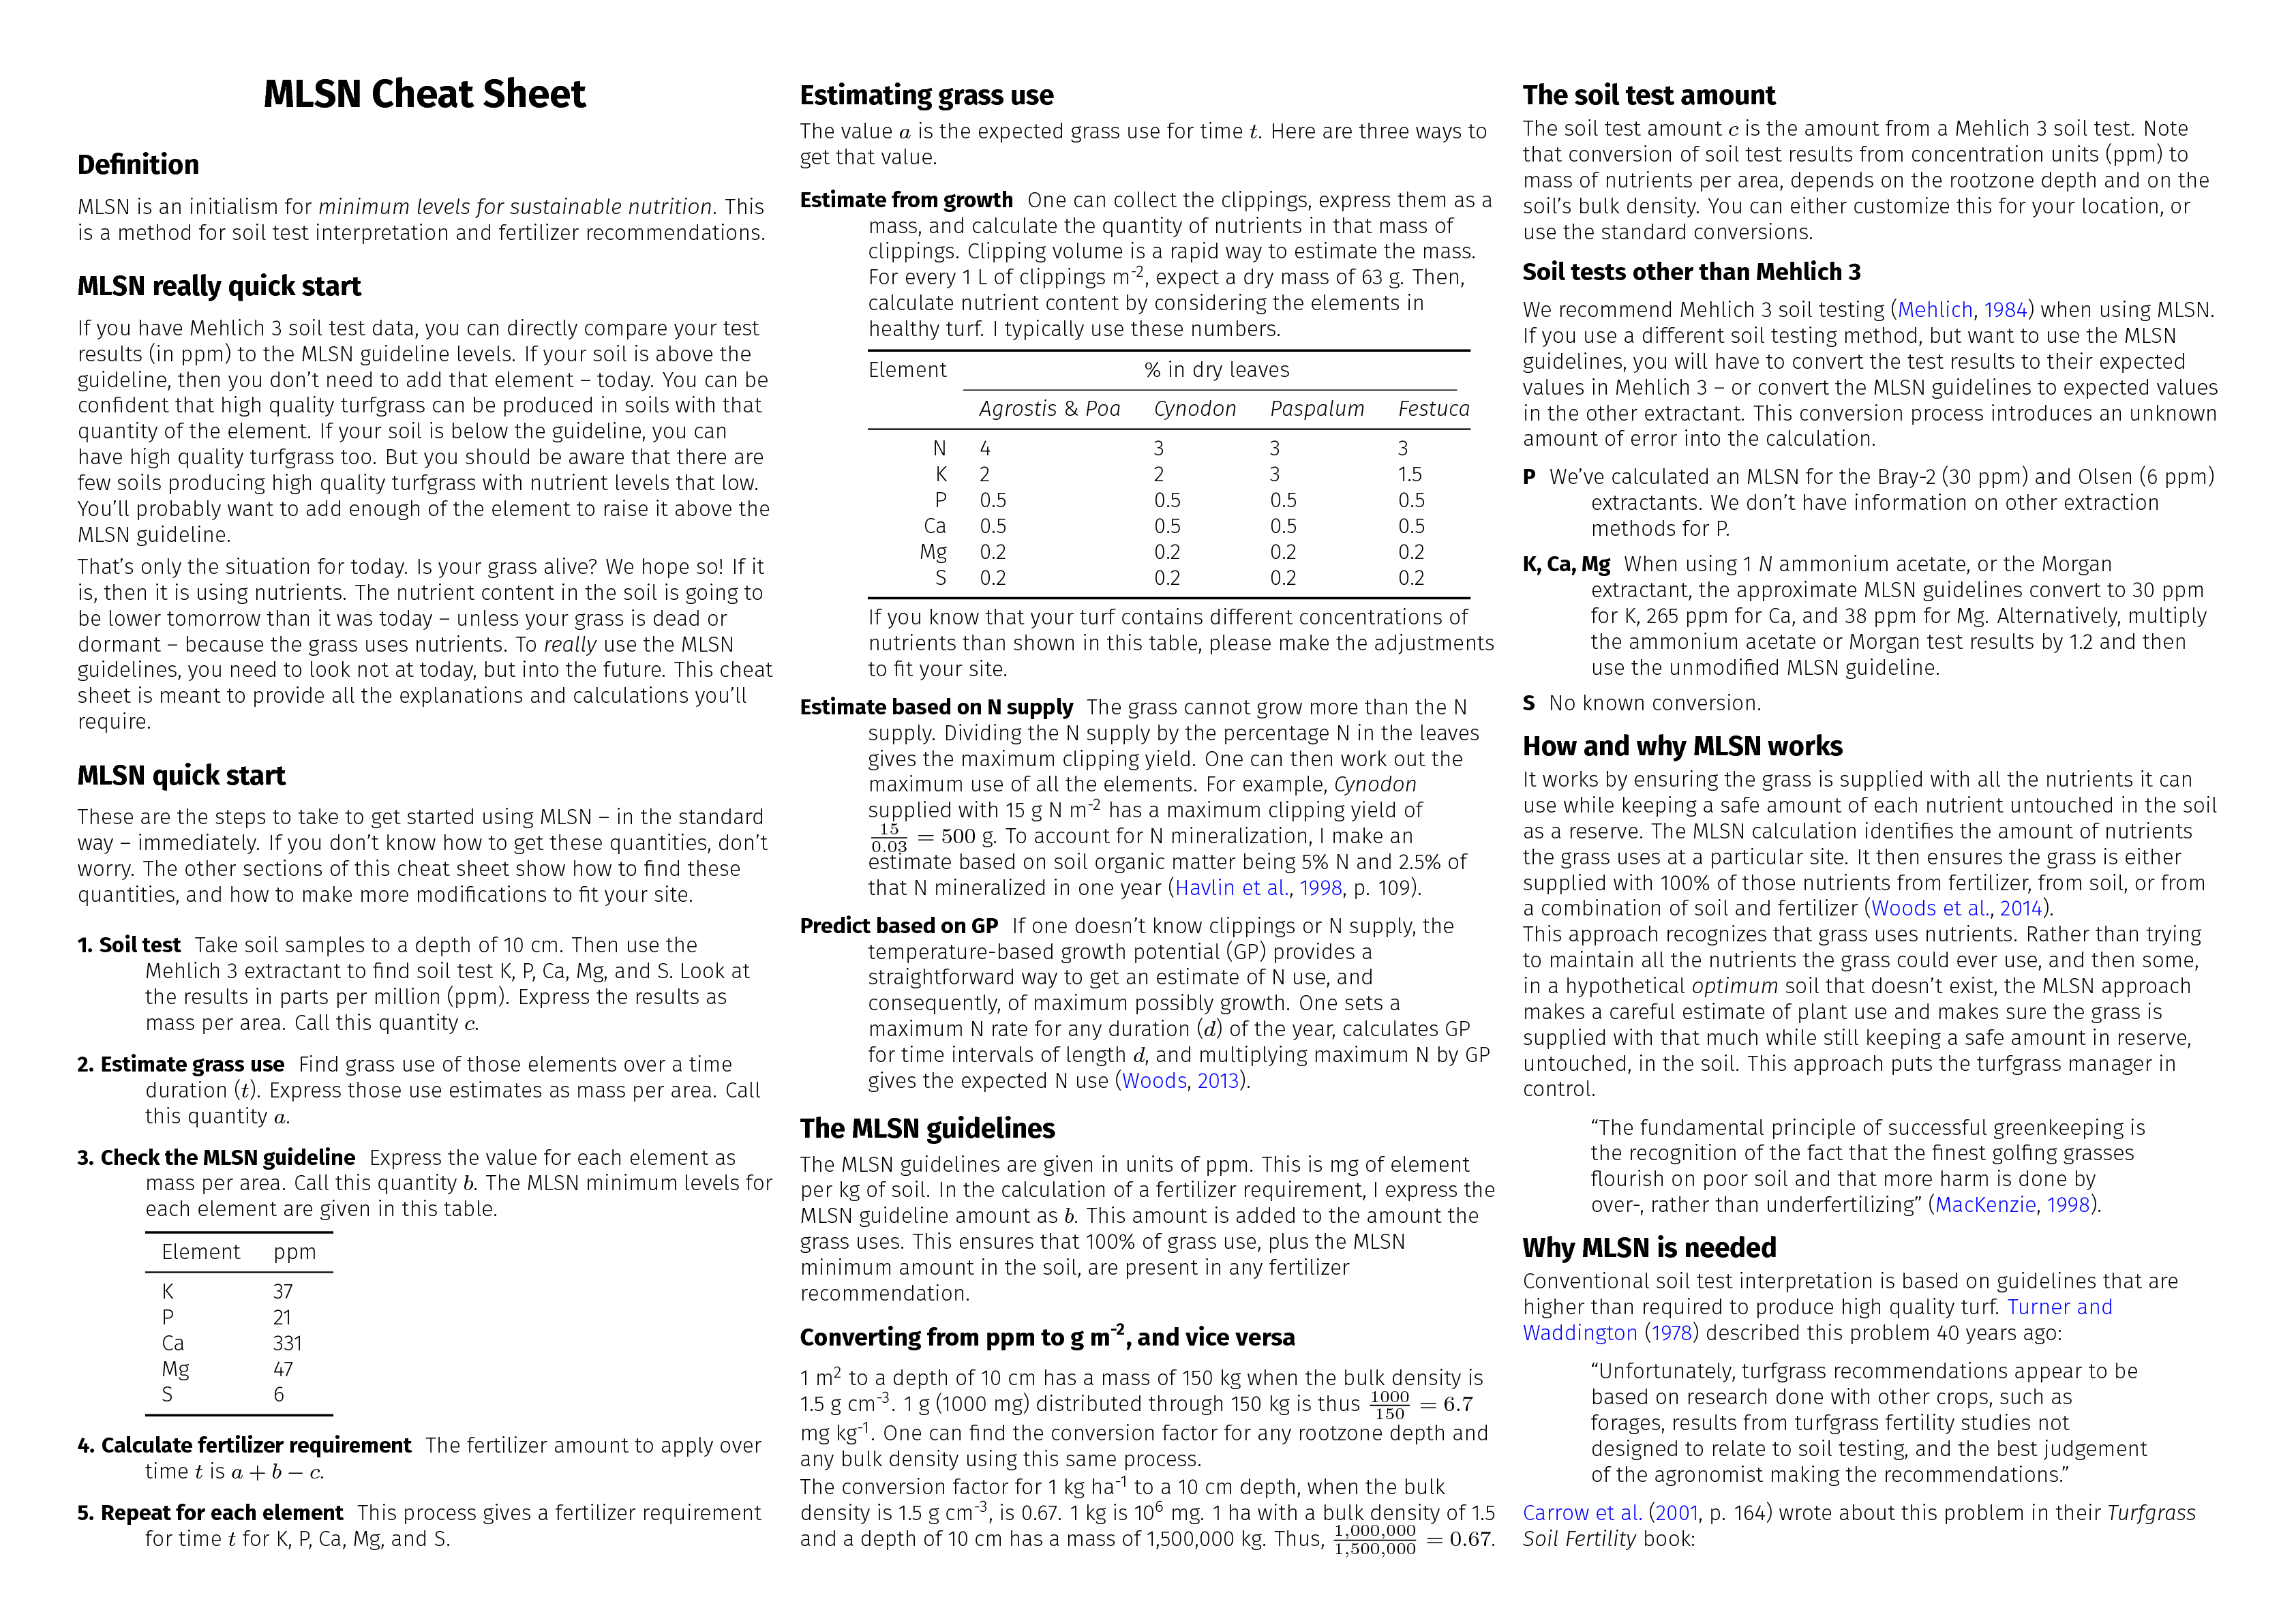 mlsn cheat sheet page 1